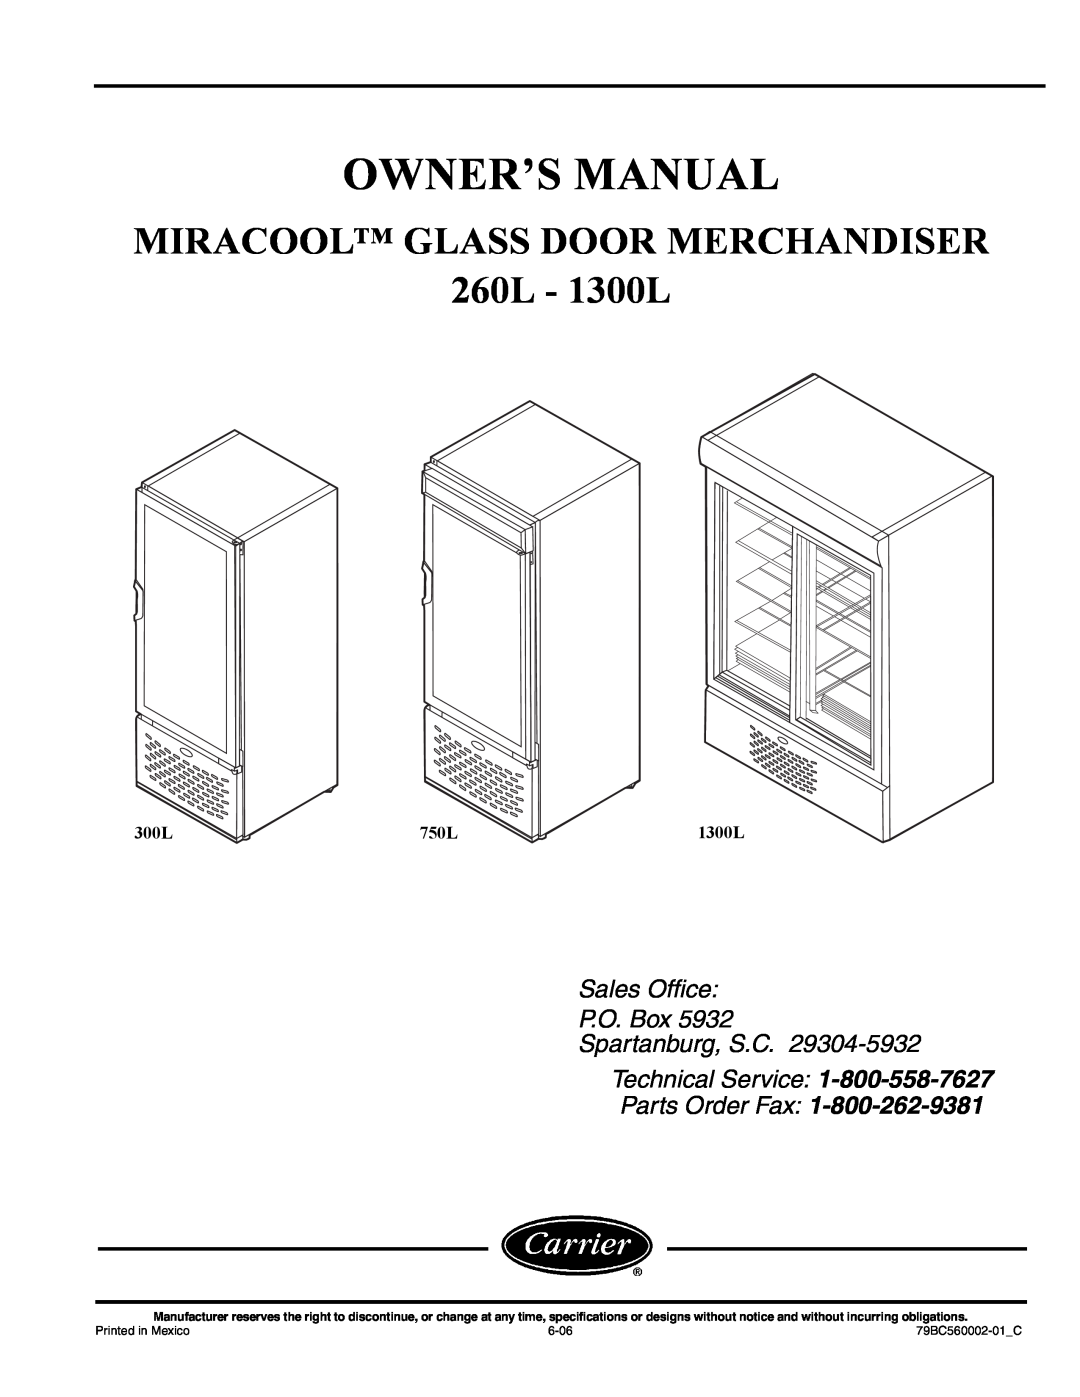 Carrier owner manual MIRACOOL GLASS DOOR MERCHANDISER 260L - 1300L, Parts Order Fax, 750L, a79-13, a79-14, a79-15 